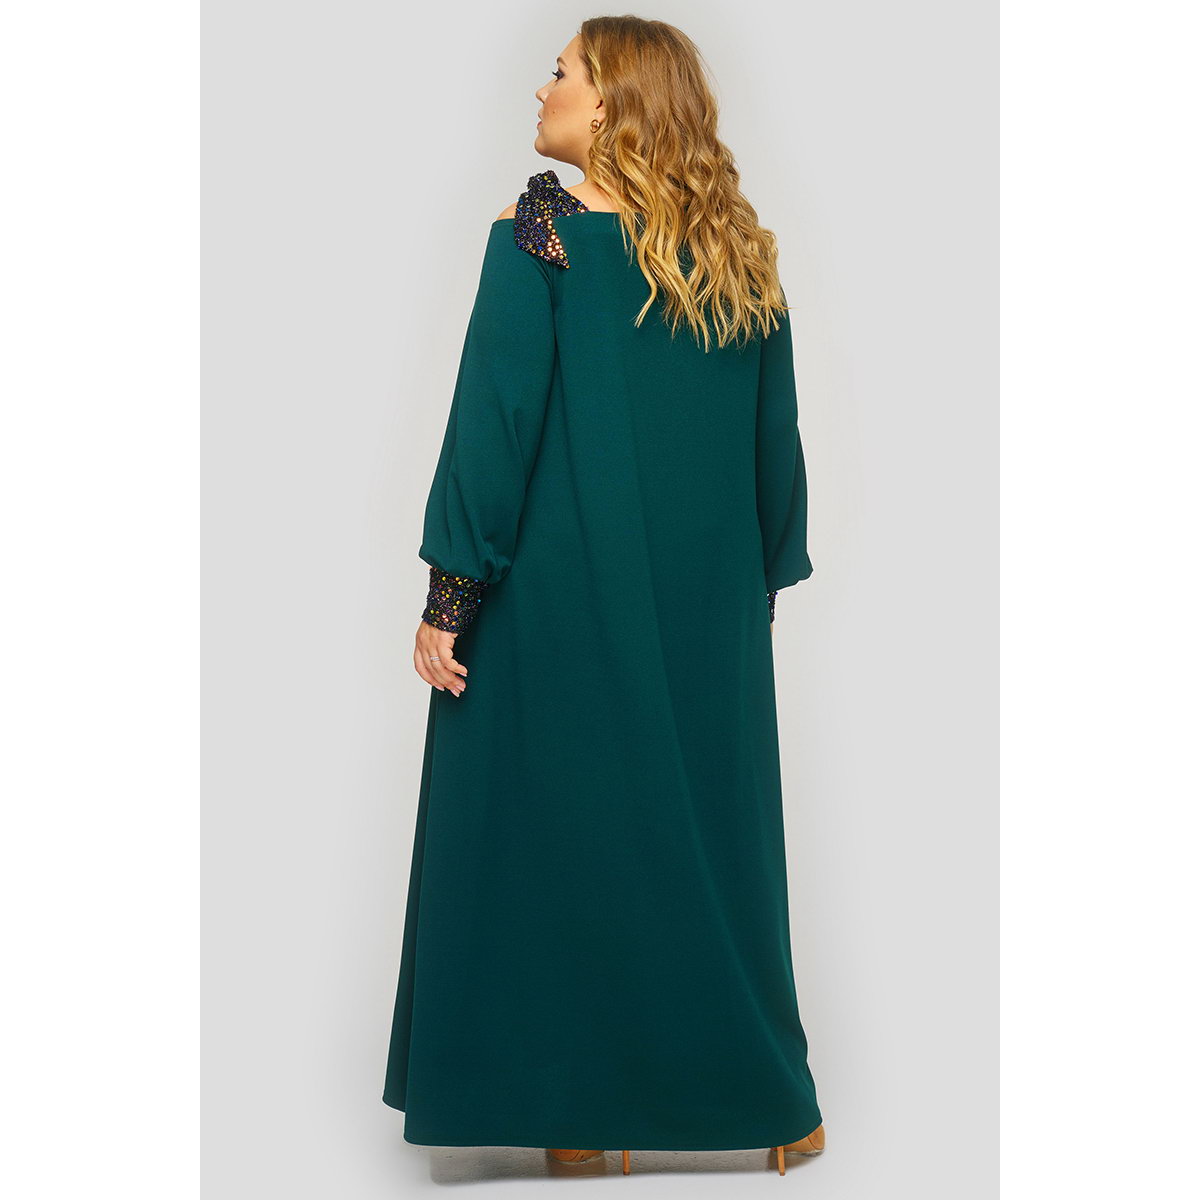 Платье длинное из зеленого крепа, отделка пайетки.